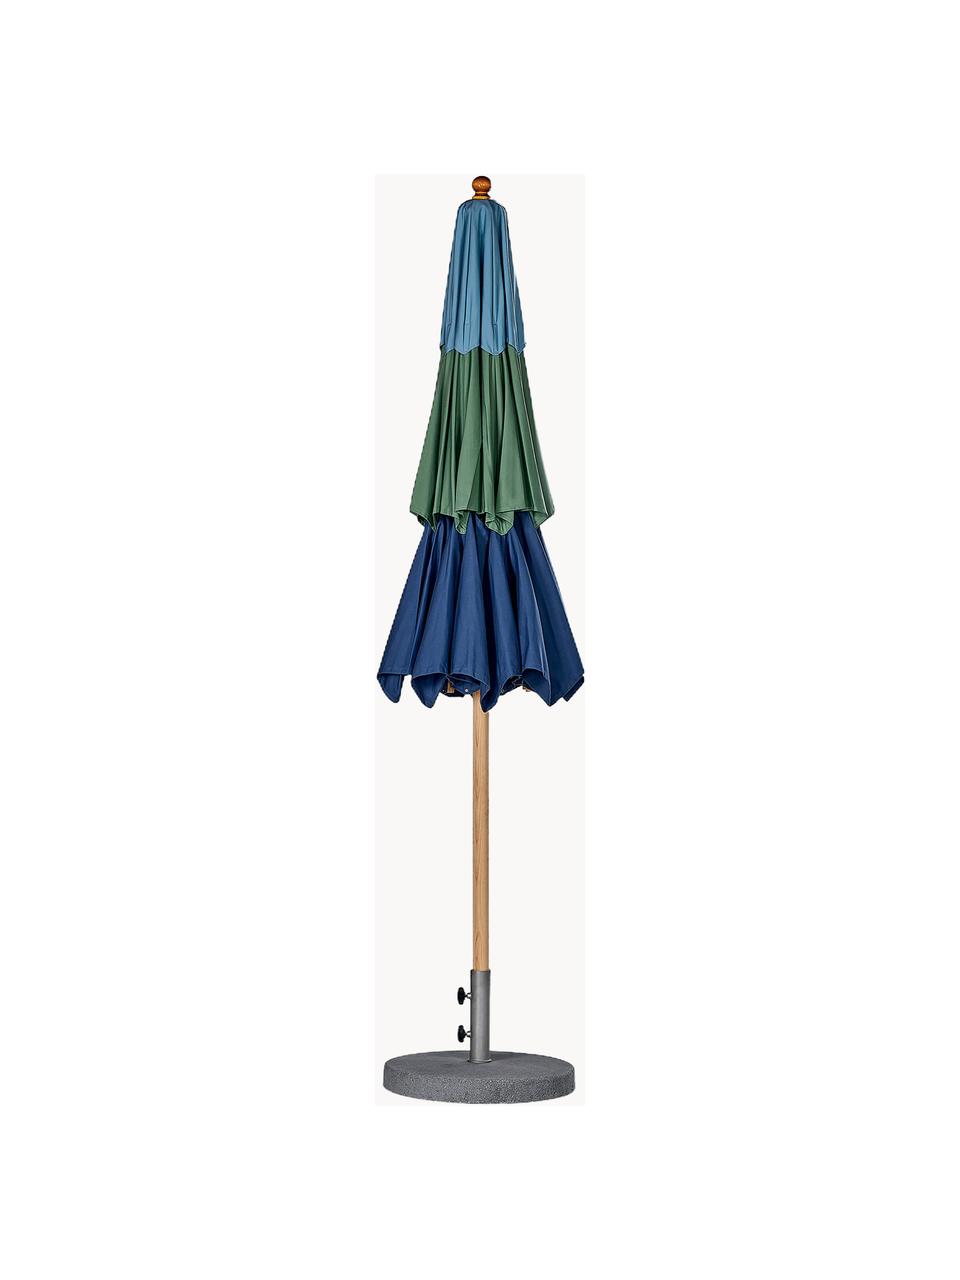 Handfertigter Sonnenschirm Klassiker mit Flaschenzug, verschiedene Grössen, Blautöne, Dunkelgrün, Helles Holz, Ø 300 x 273 cm